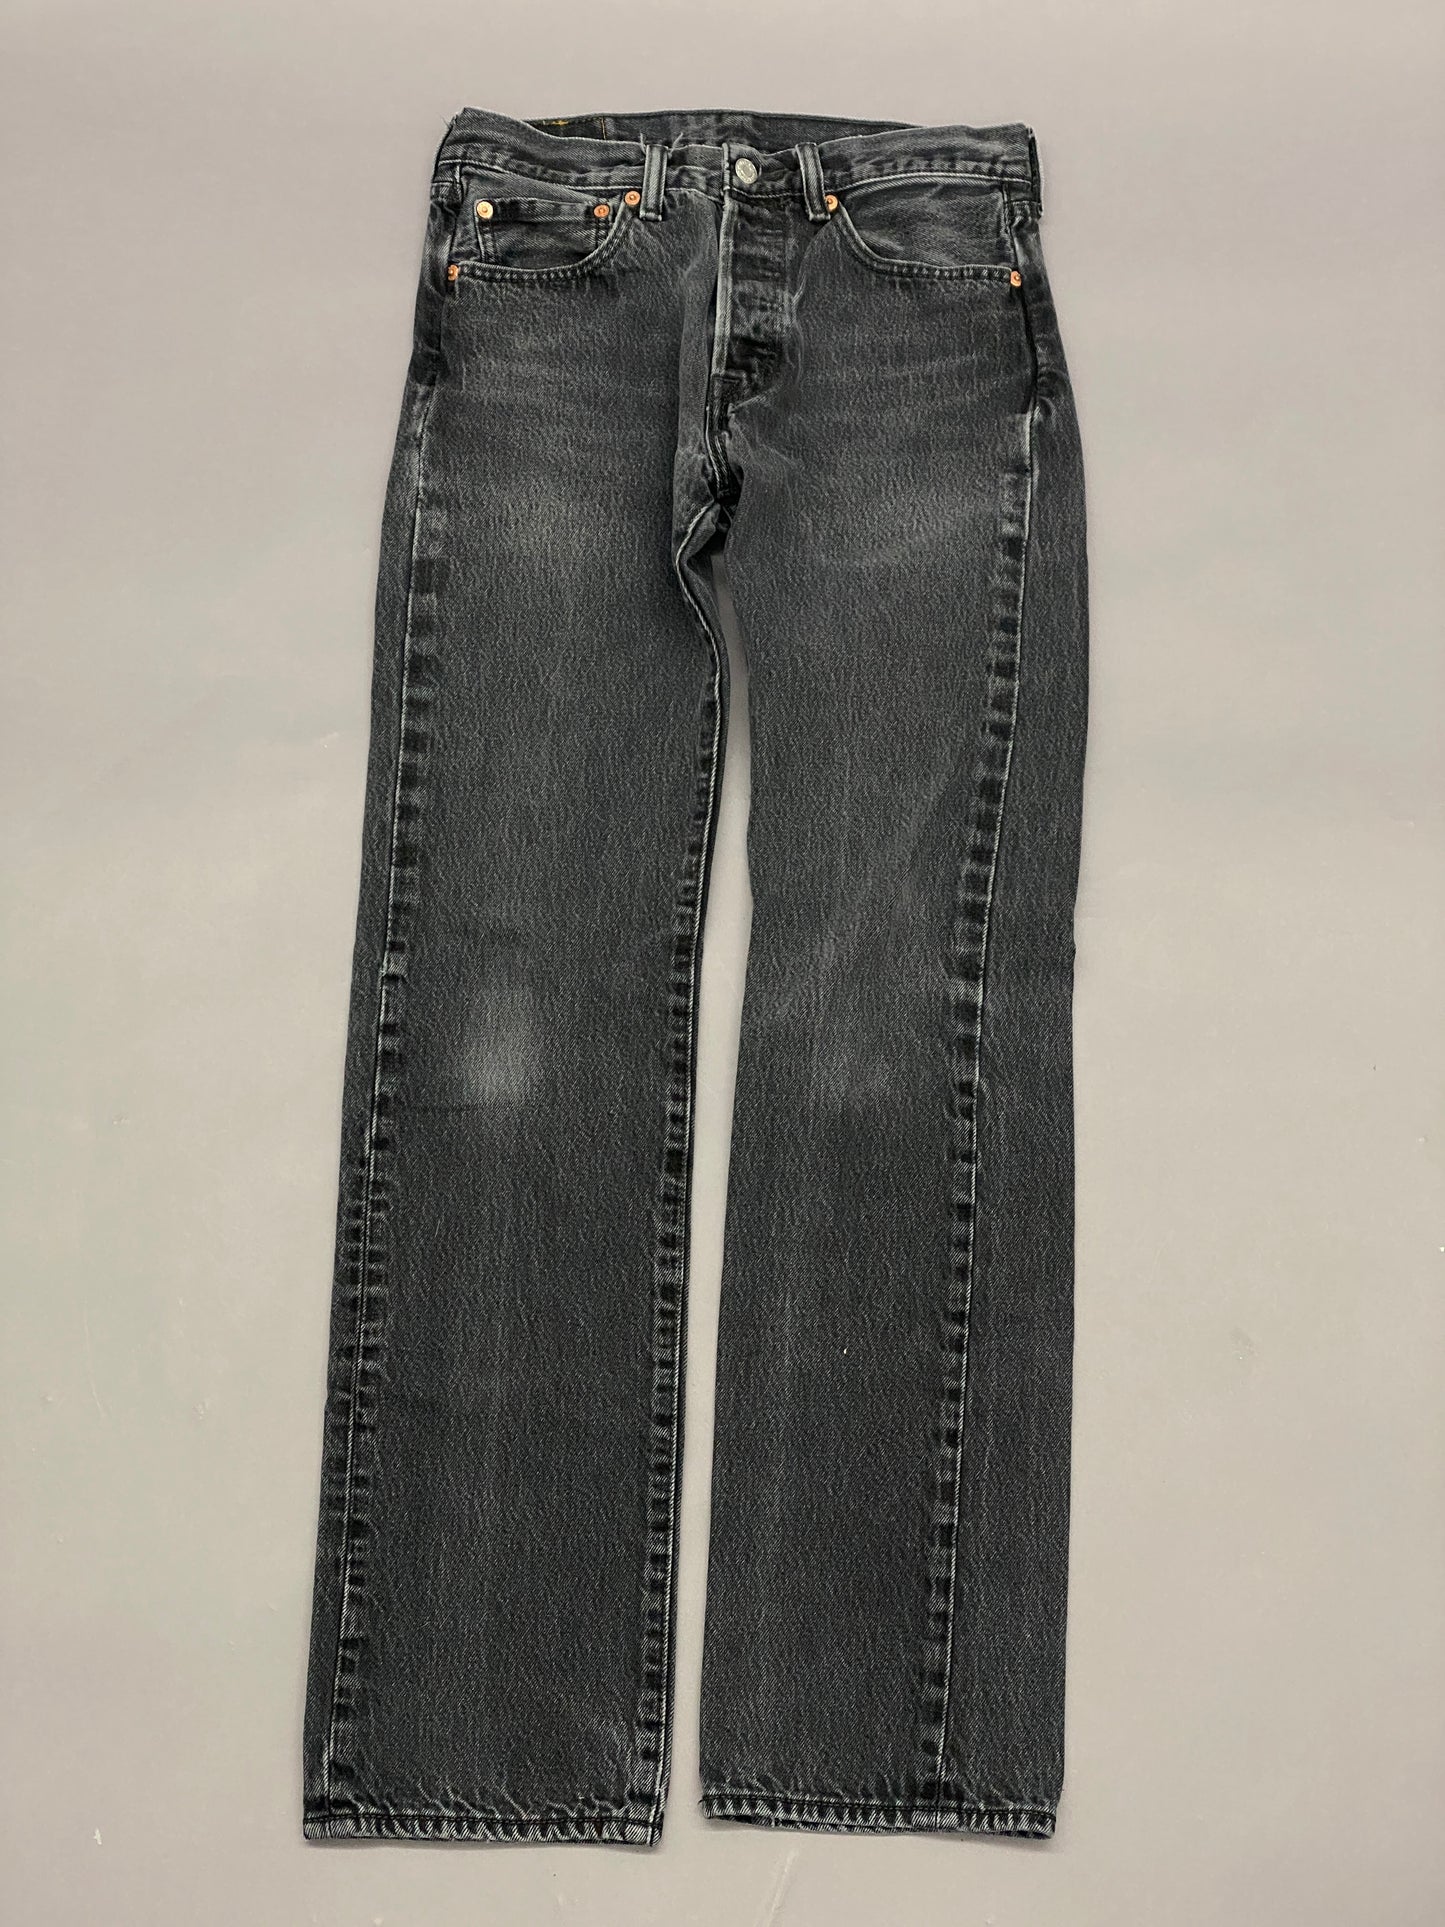 Levis 501 Vintage Jeans - 31 x 36